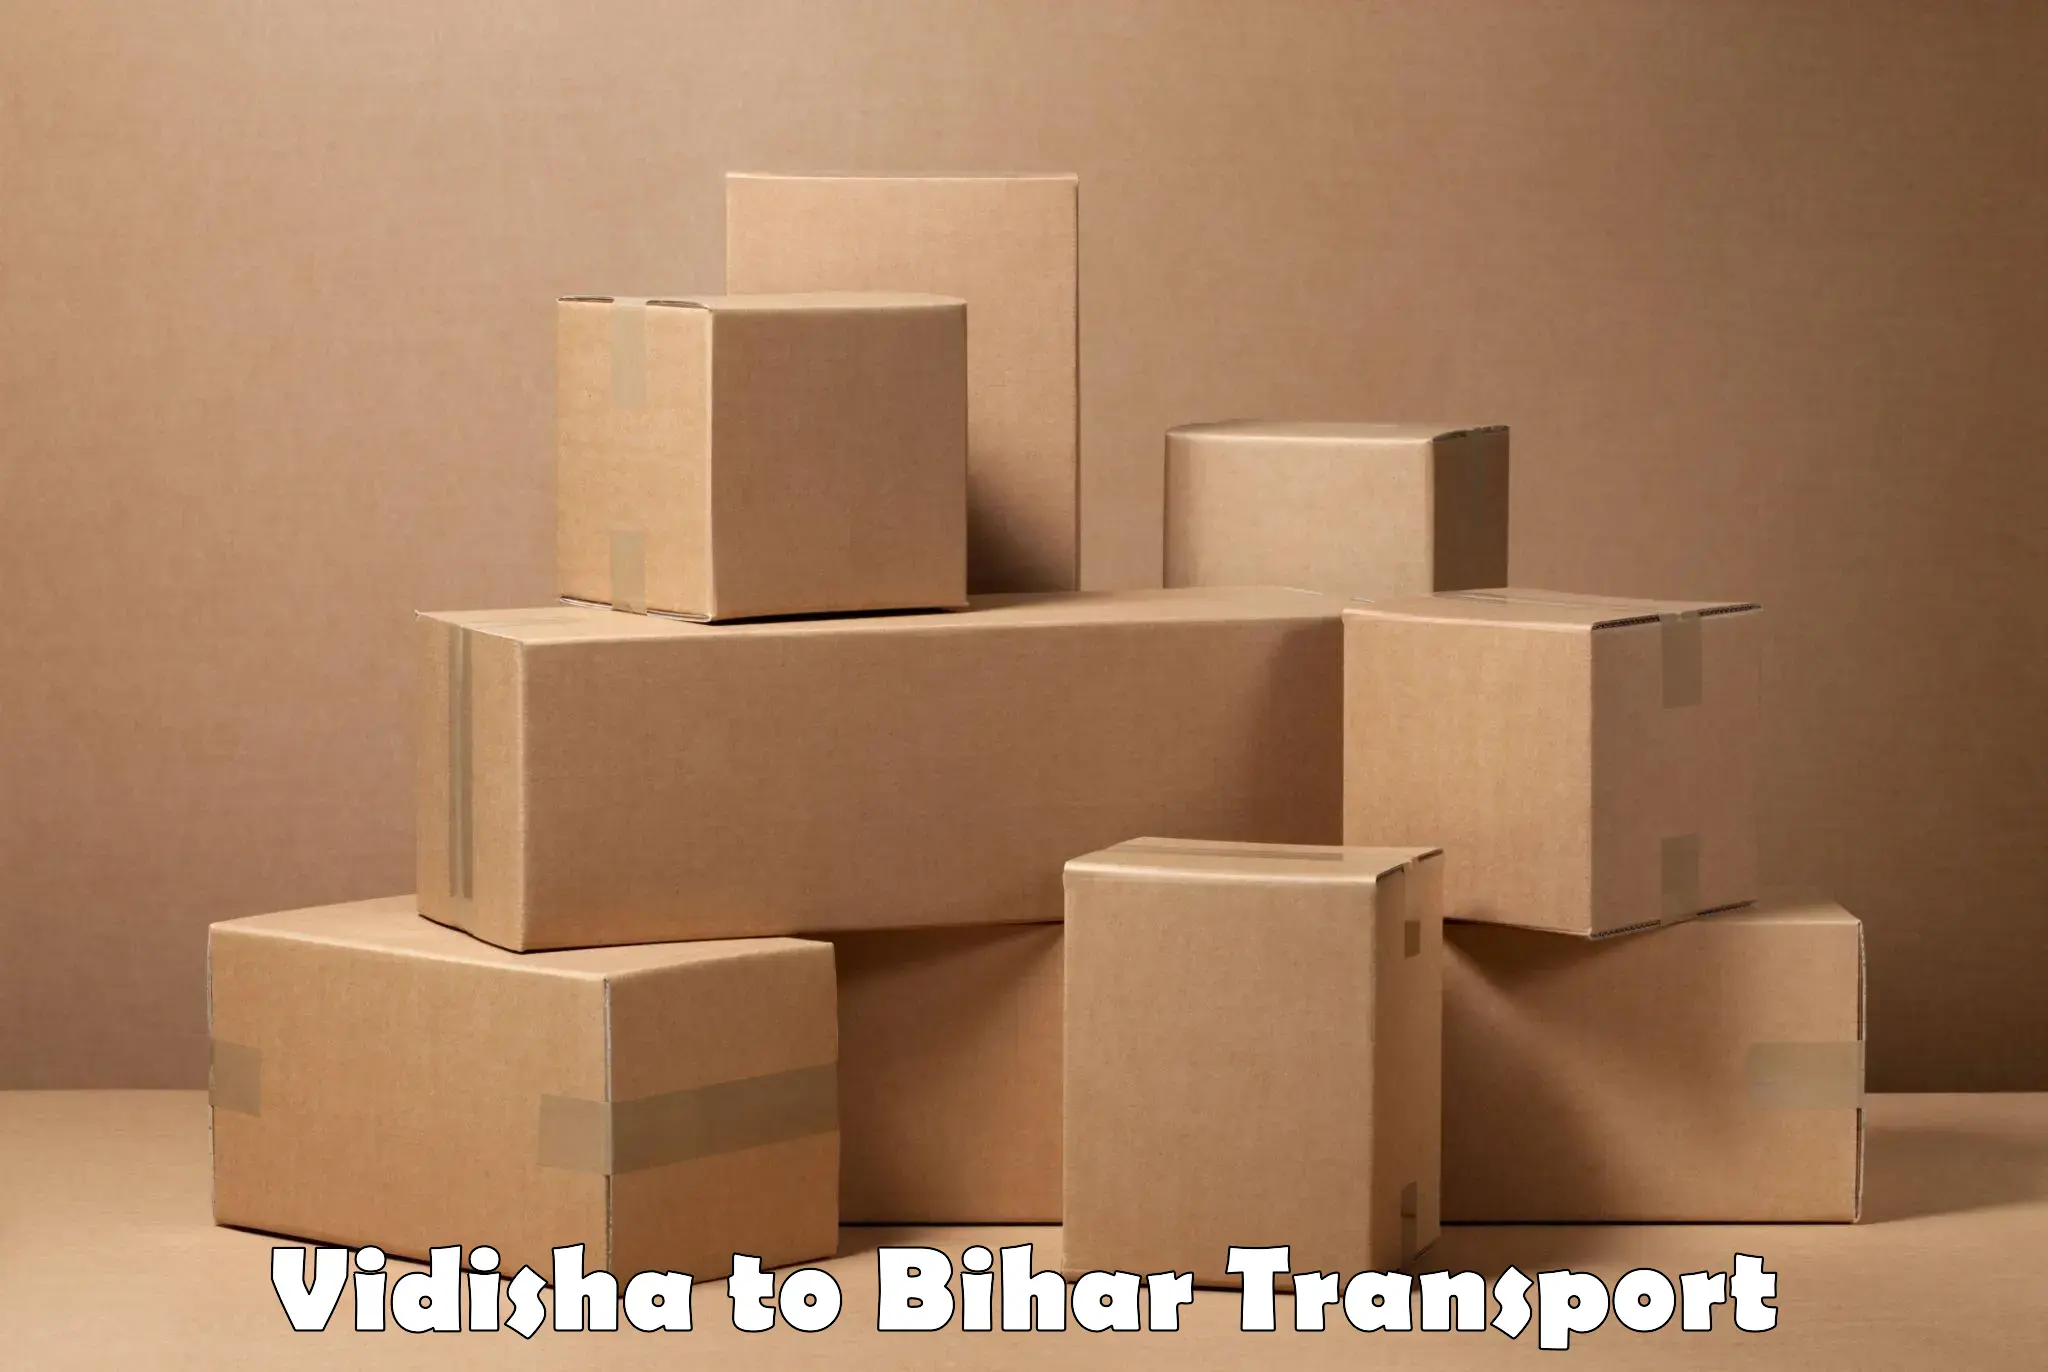 Lorry transport service Vidisha to Khizarsarai